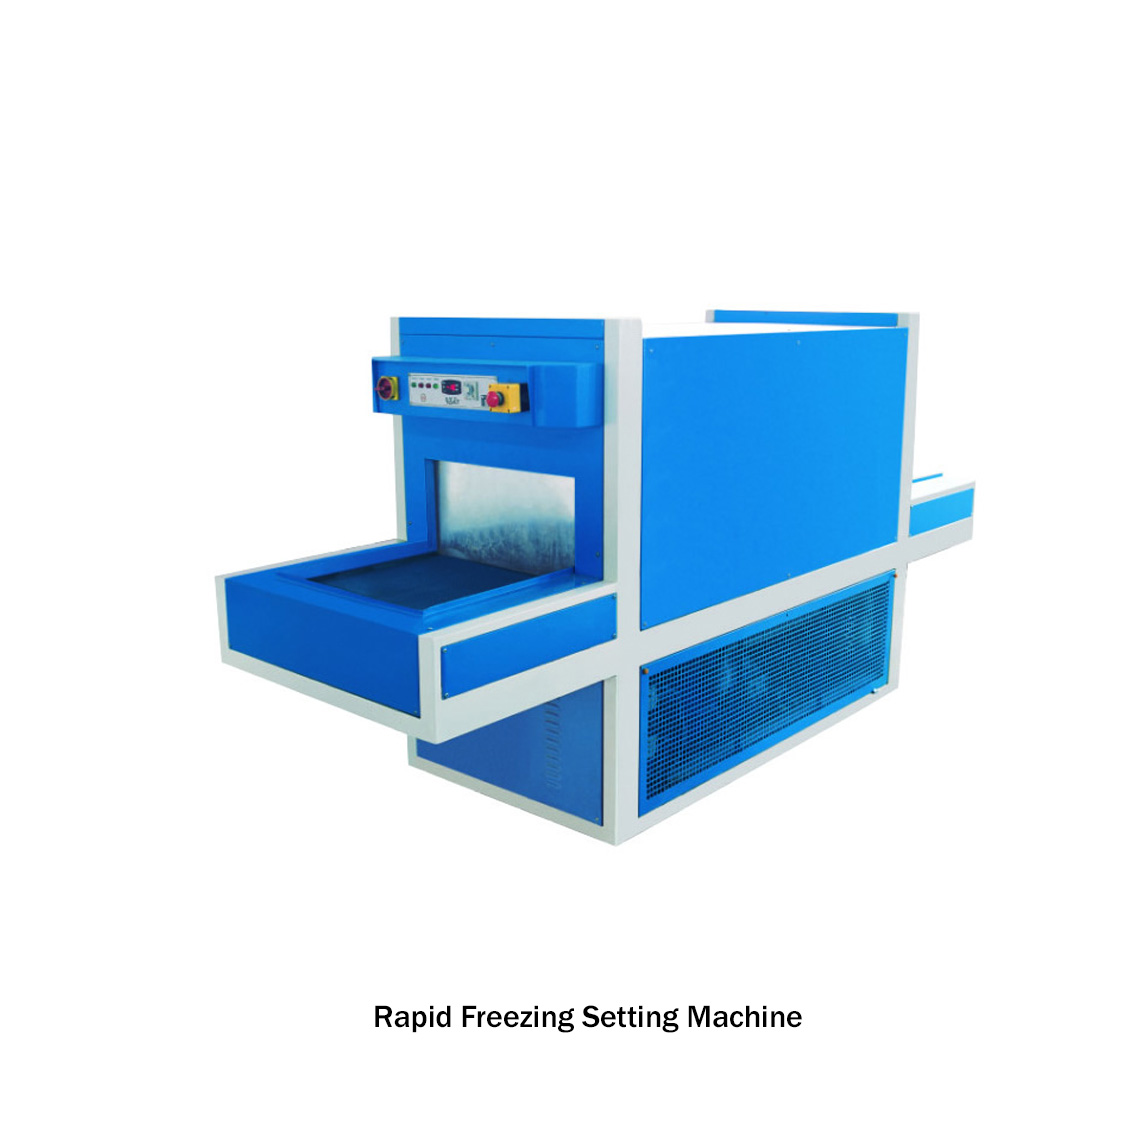 Rapid Freezing Setting Machine